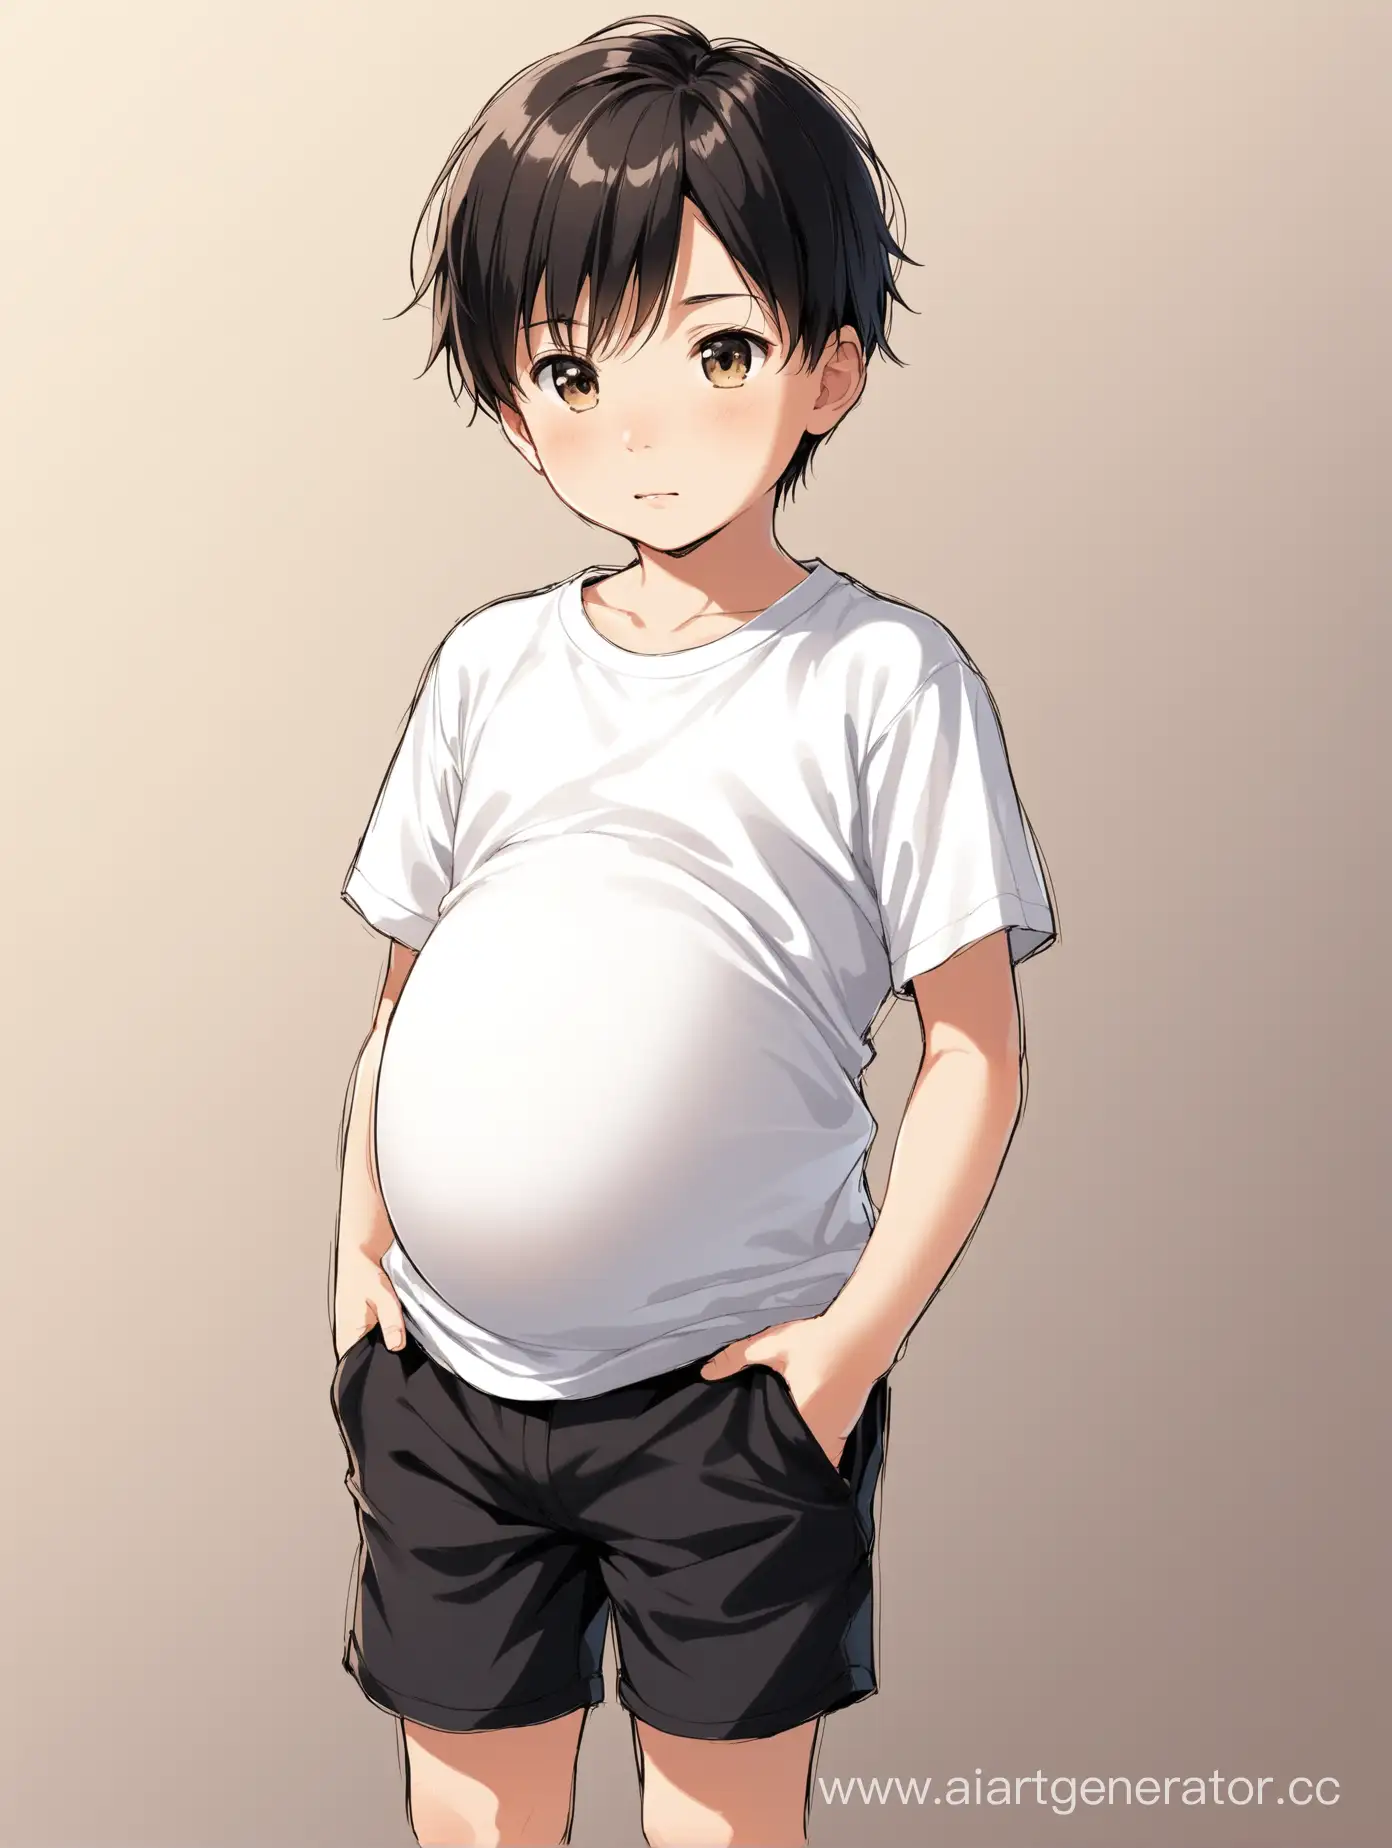 Тринадцатилетний мальчик на пятом месяце беременности. На нем надета белая футболка и черные длинные шорты. У него темные короткие волосы.